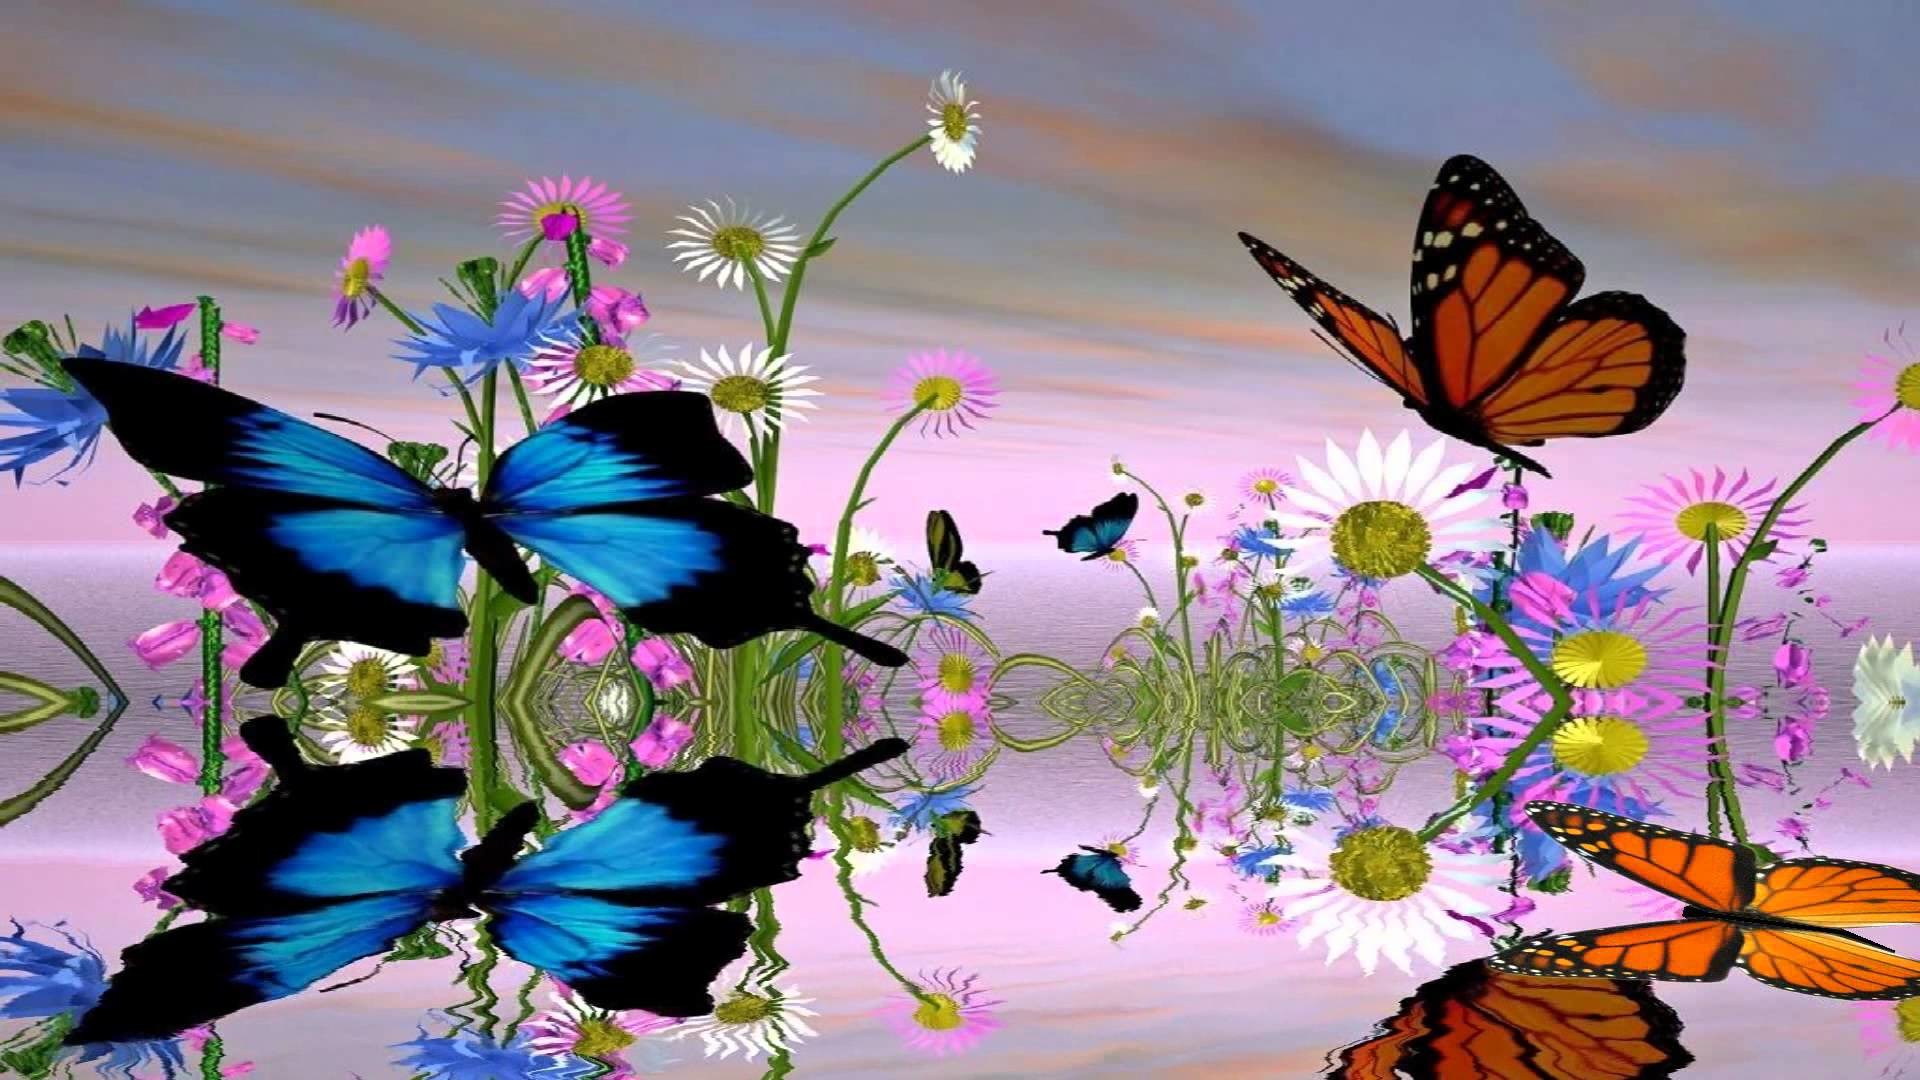 Движущиеся обои на заставку. Бабочка на цветке. Фон бабочки. Красивый фон с бабочками. Сверкающие бабочки.